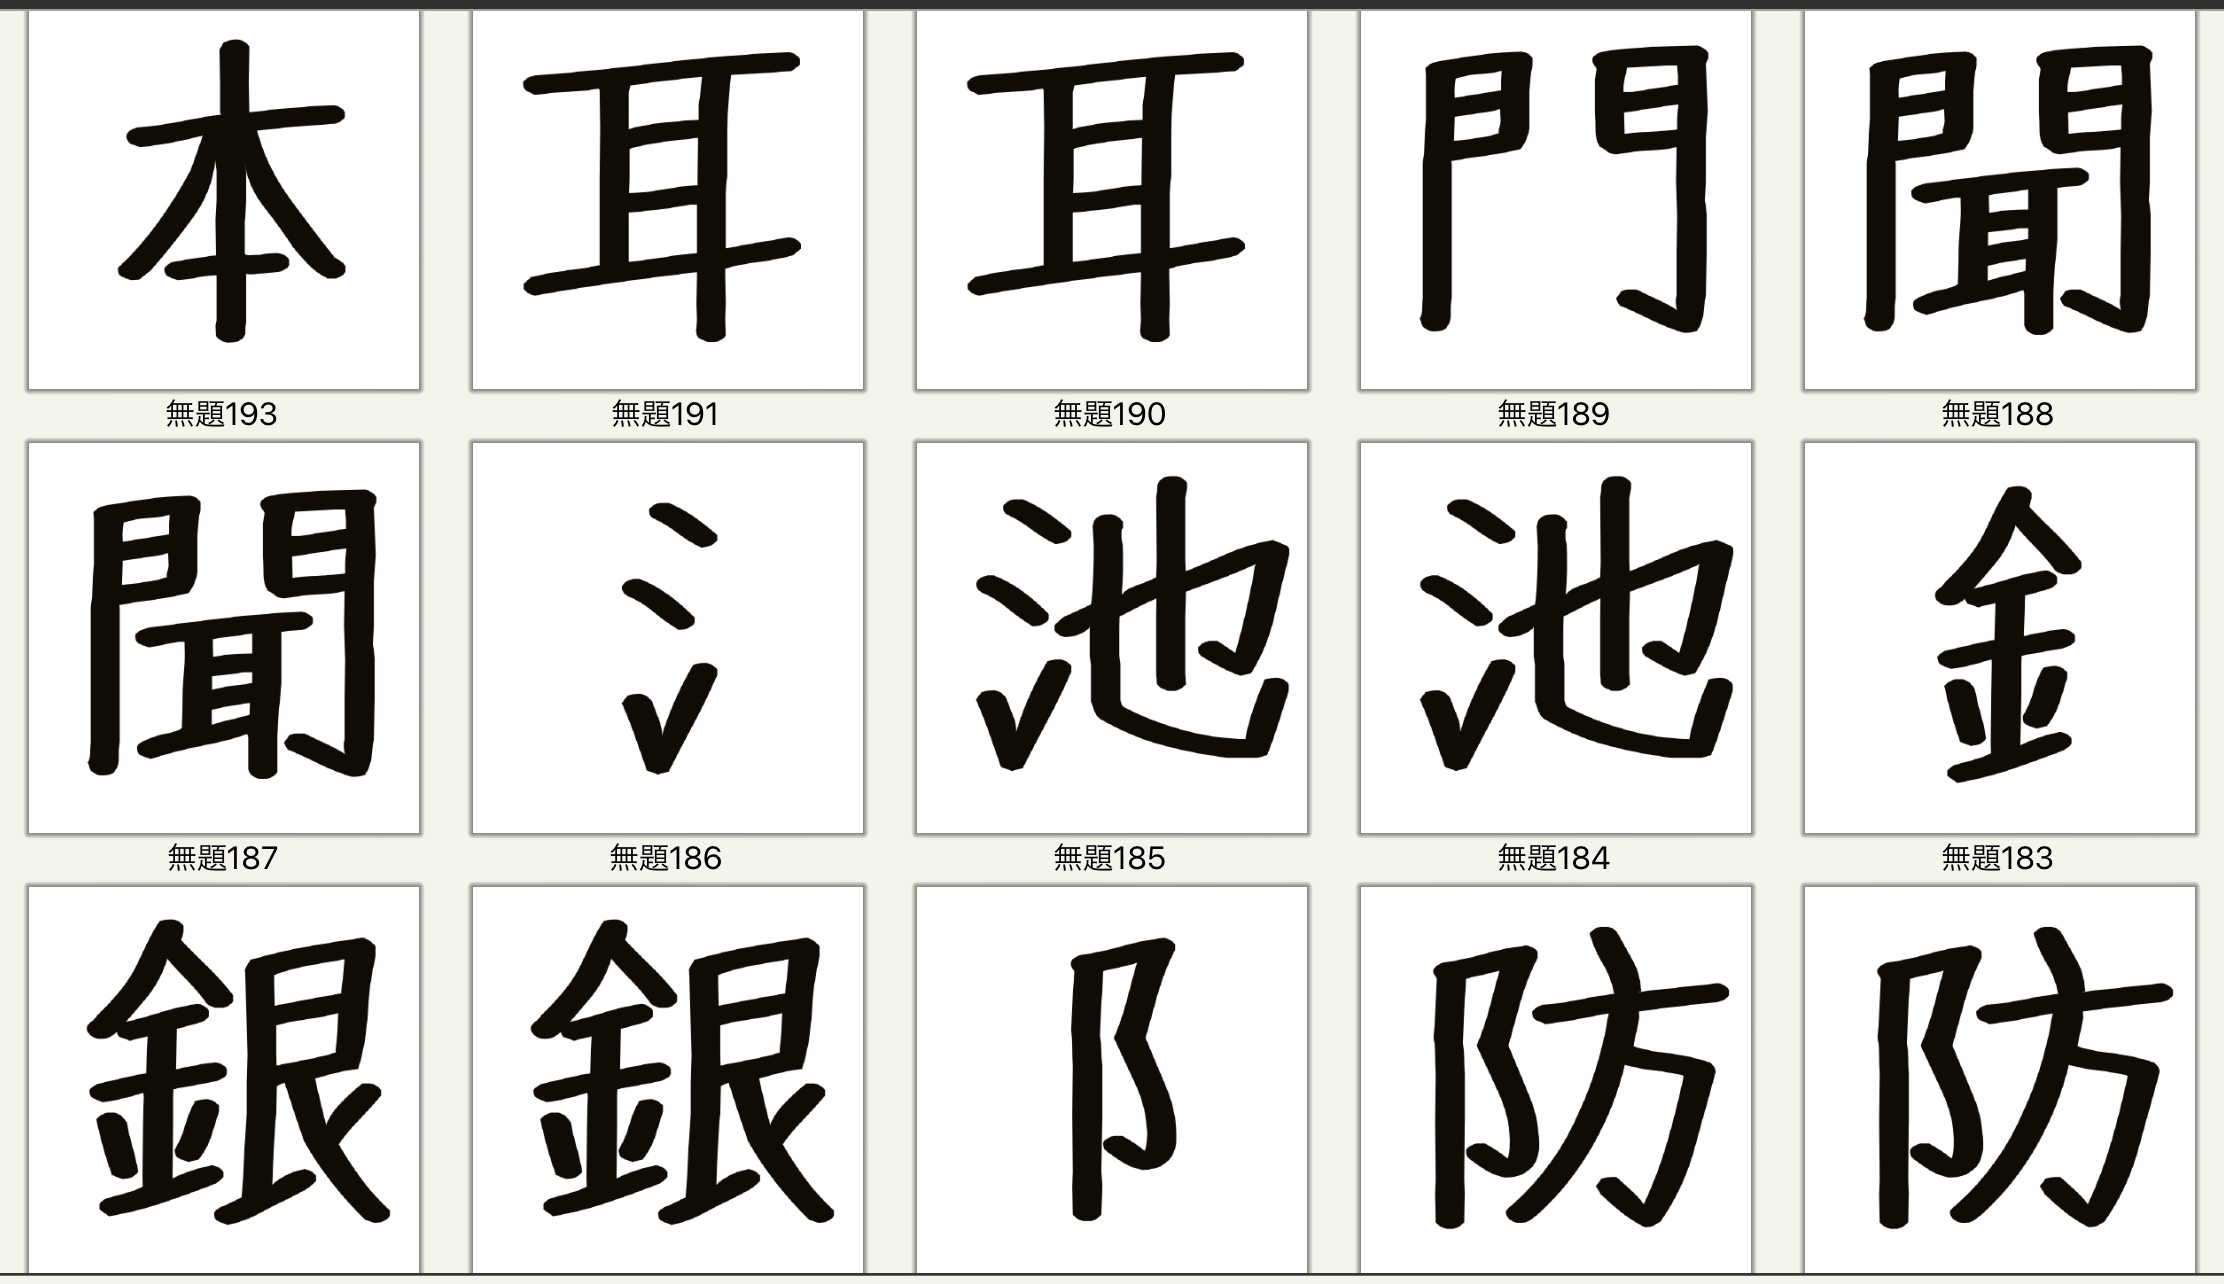 漢字 の へん と つくり